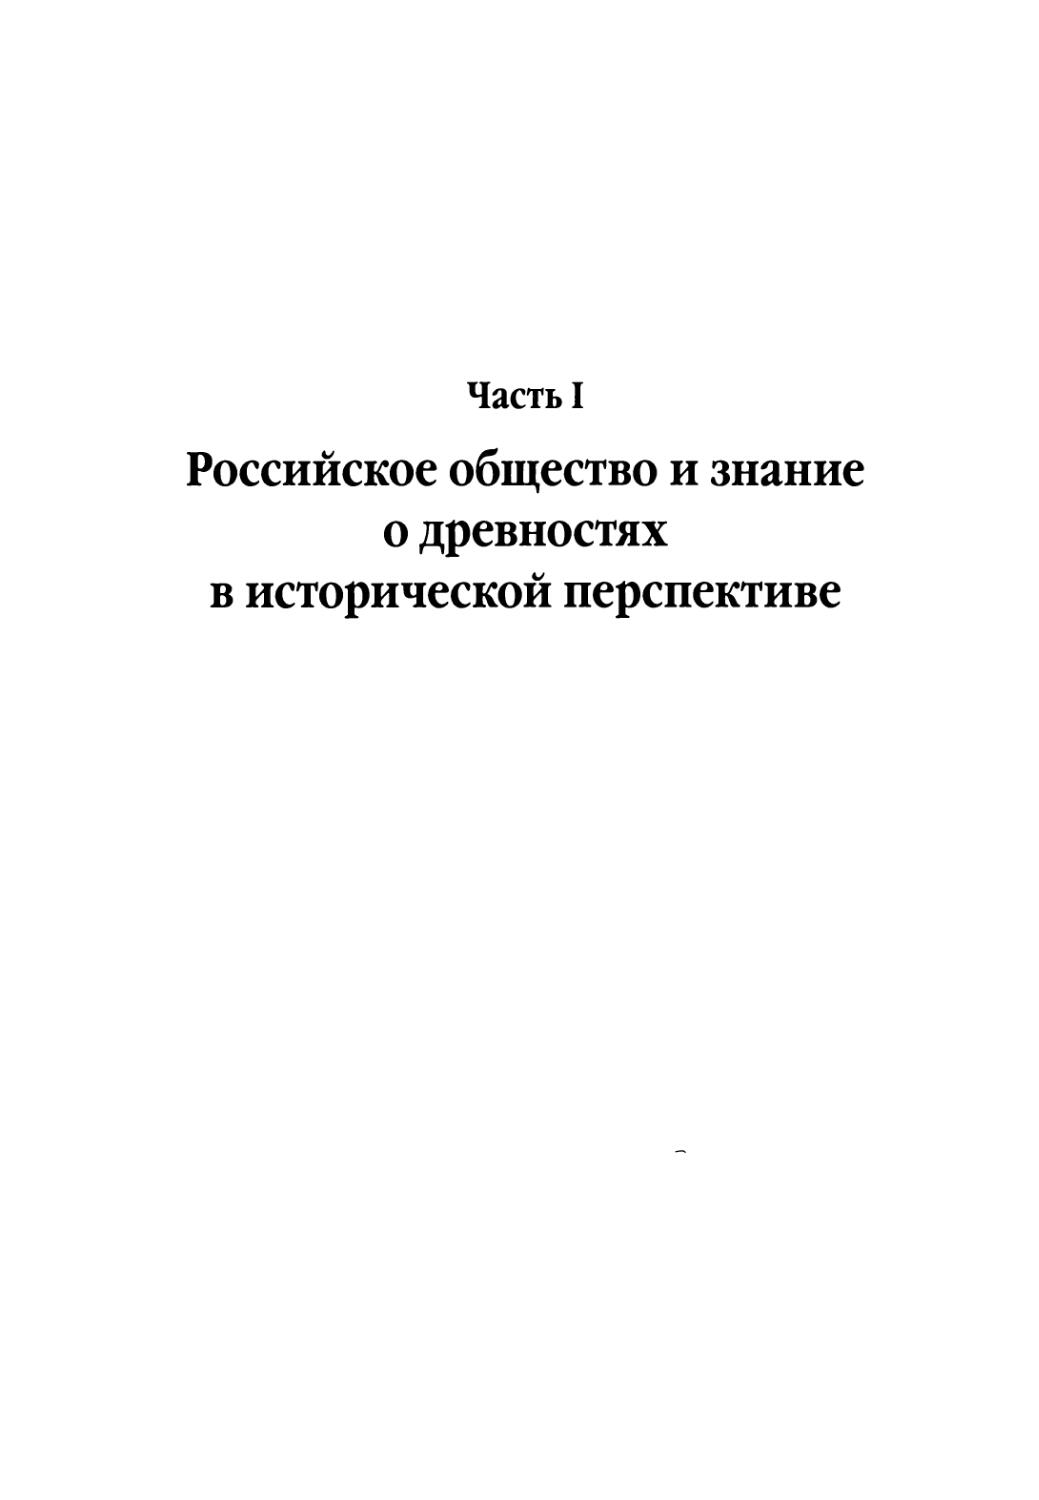 Часть 1. Российское общество и знание о древностях в исторической перспективе